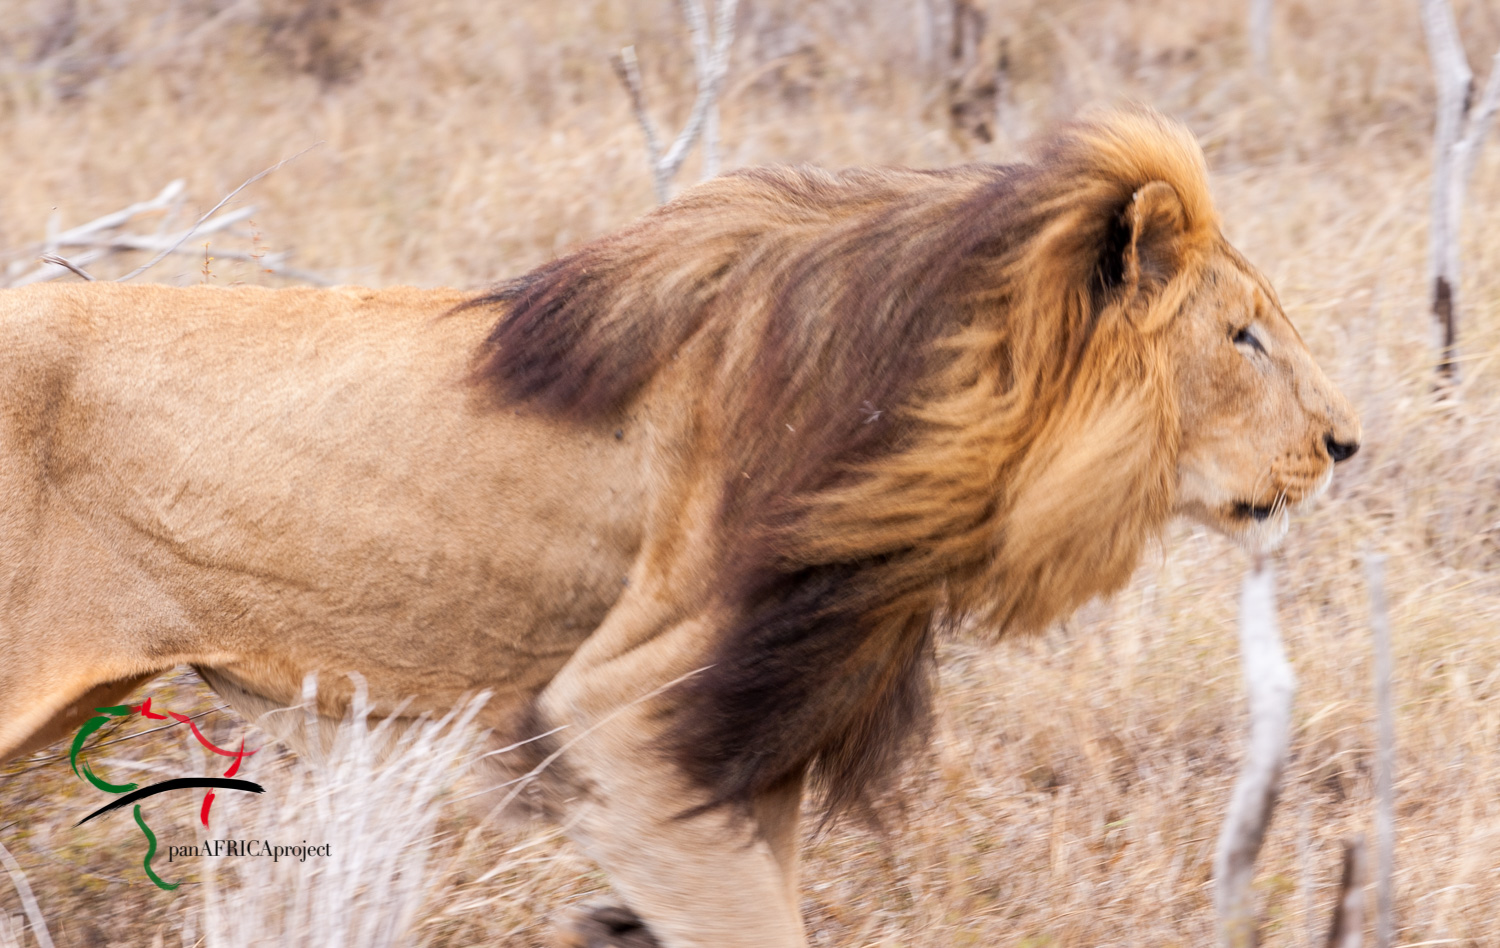 Lion roaming in the safari